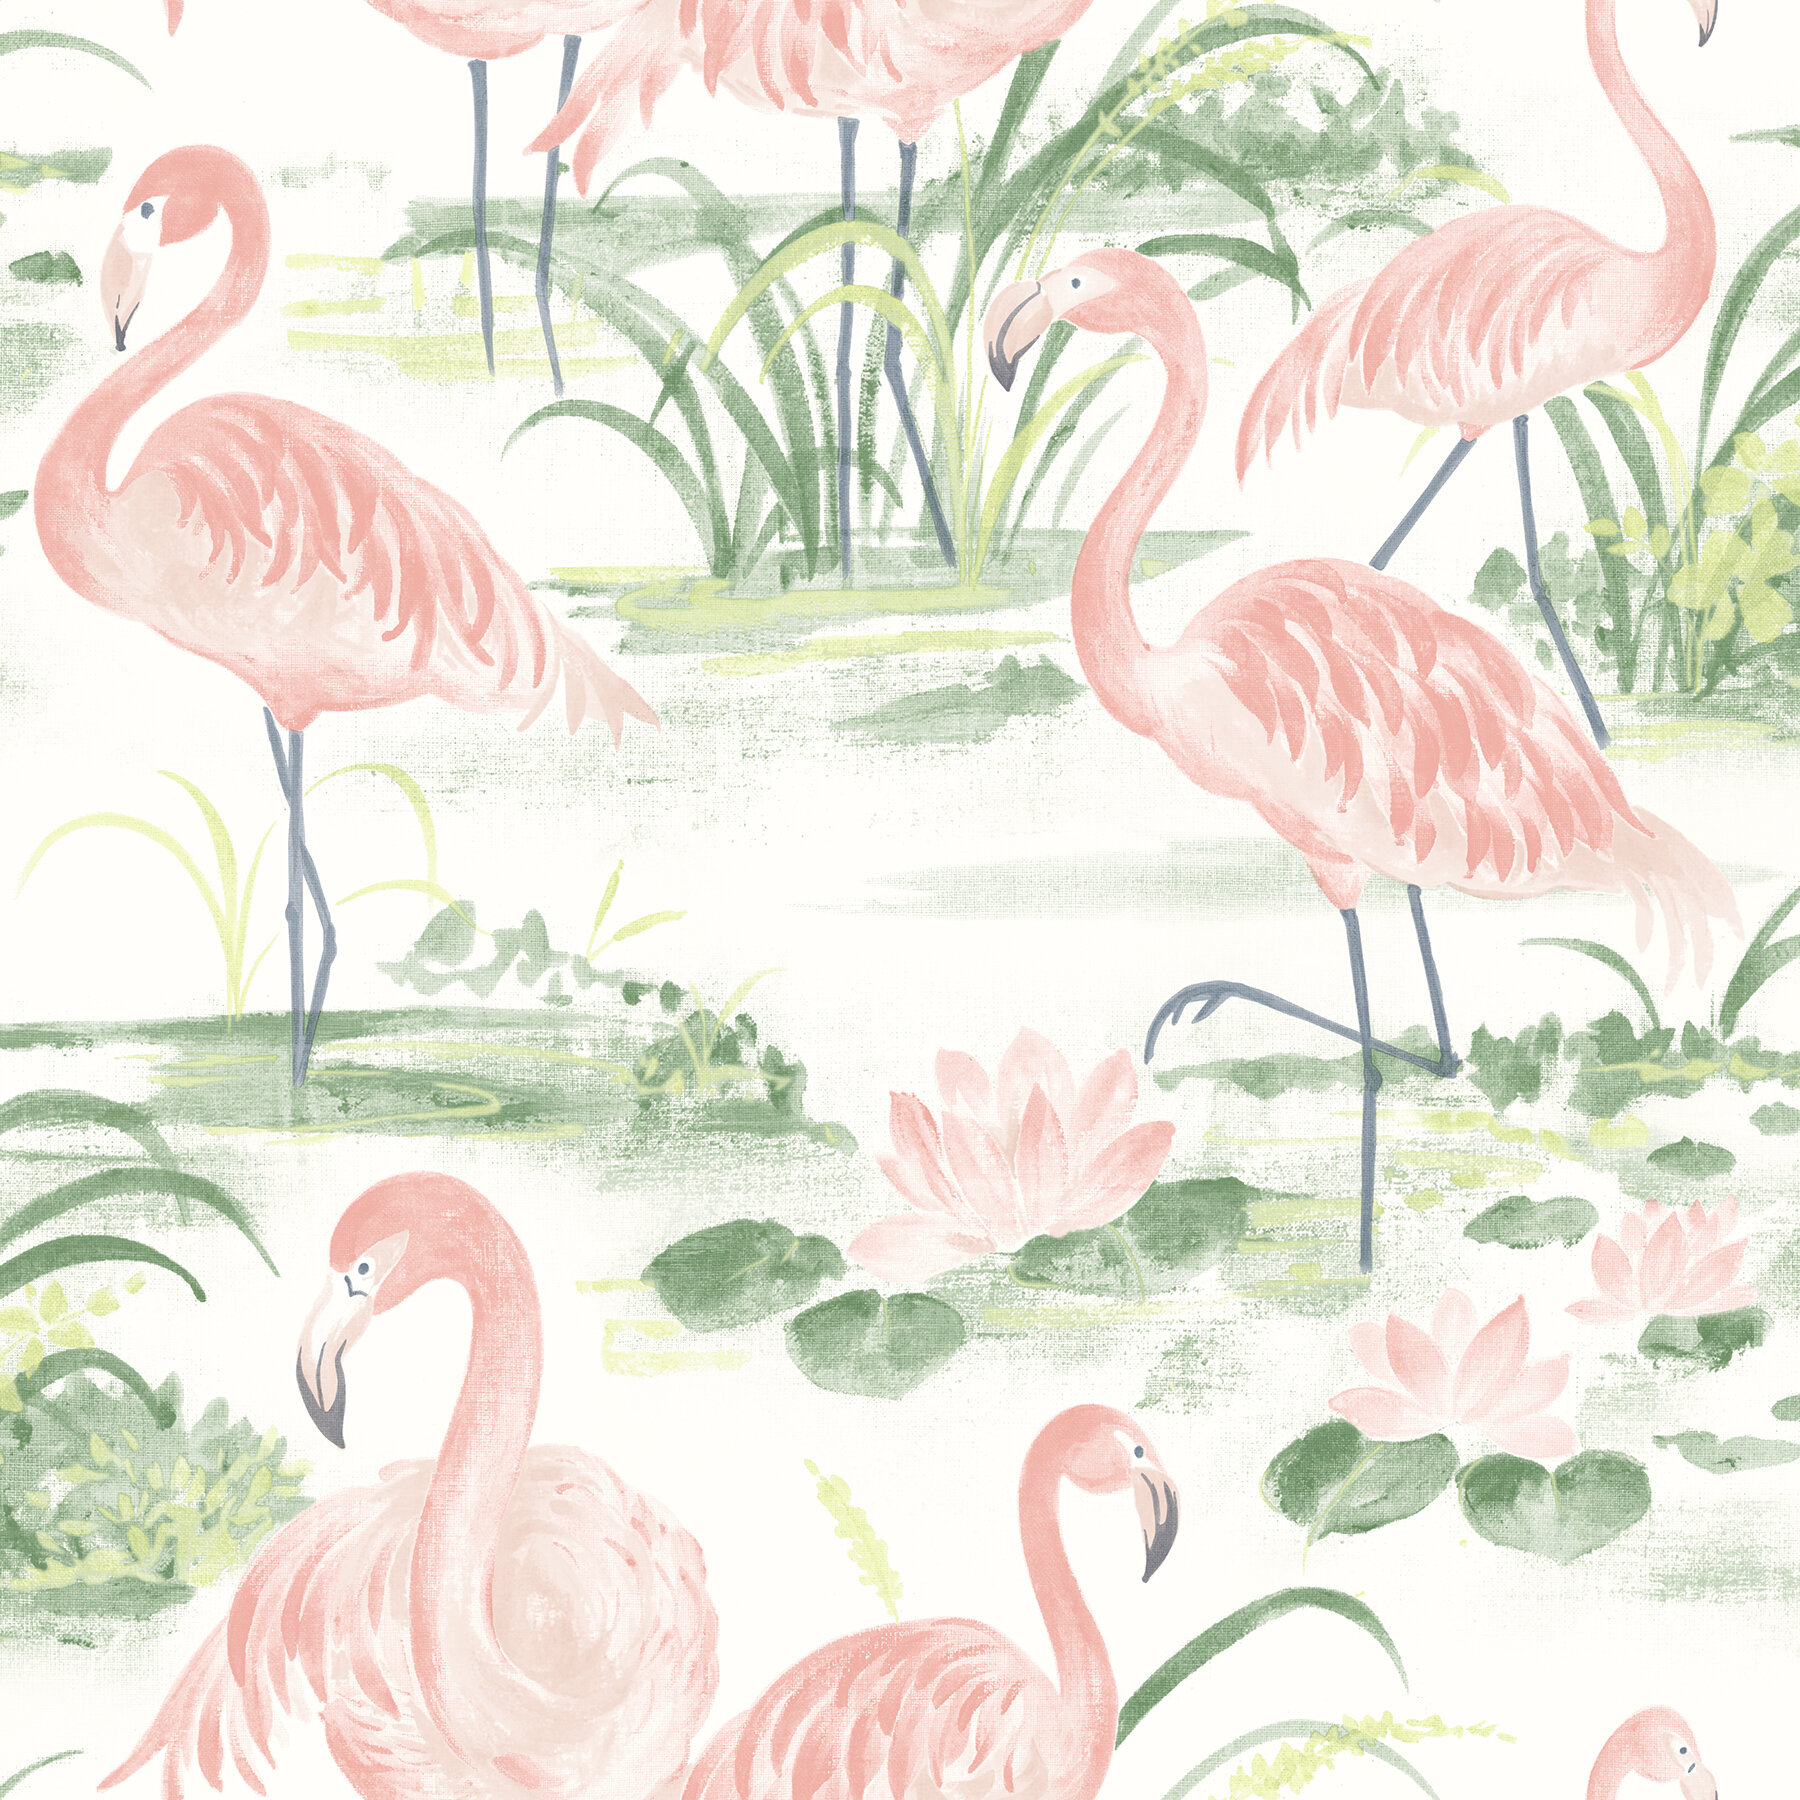 Three Flamingos Wall Mural Wallpaper WS-42760 